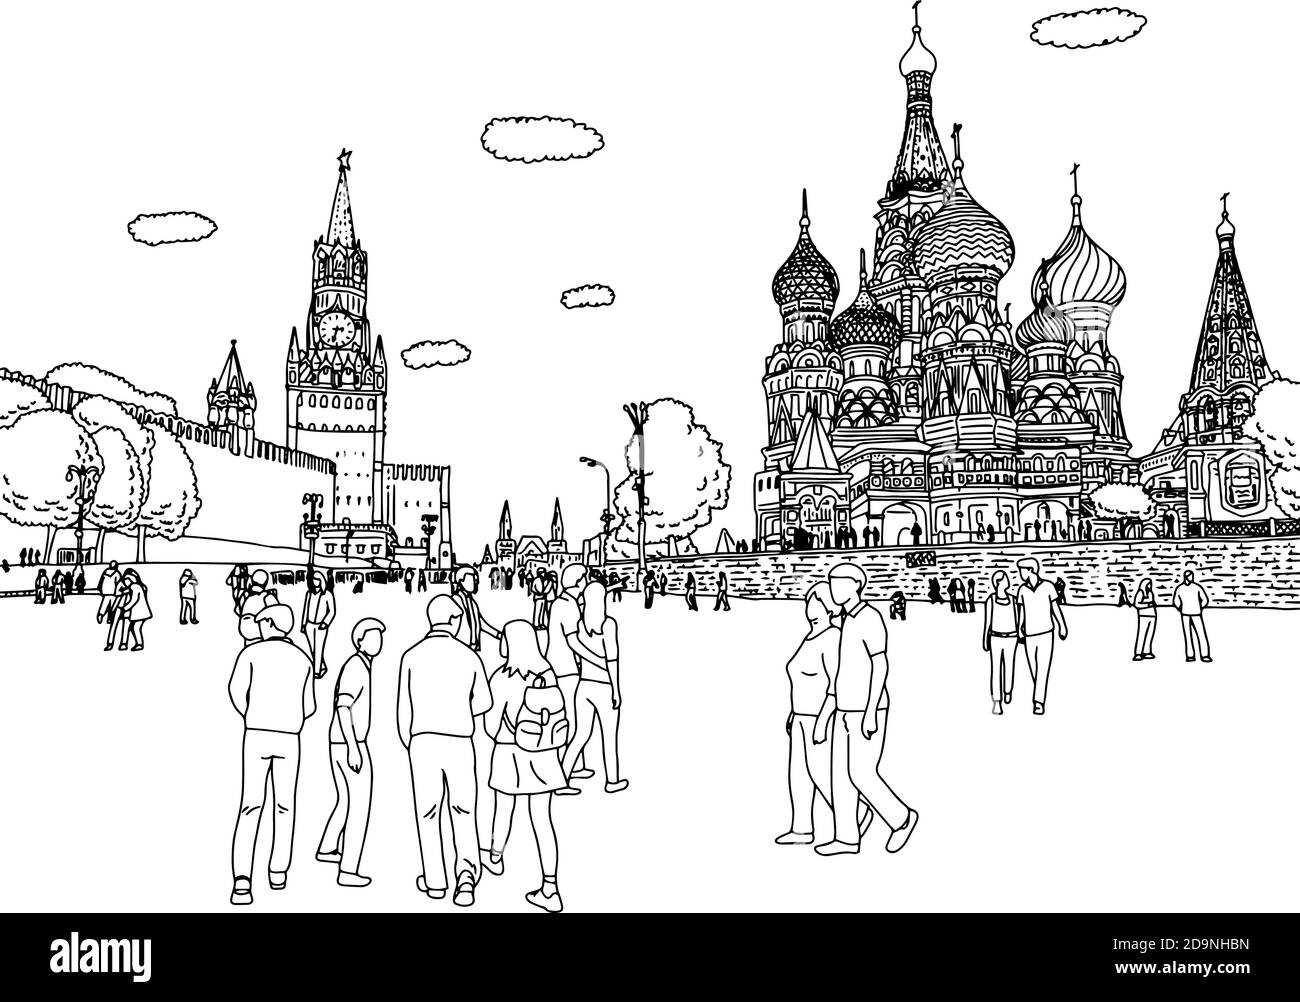 Persone o turisti a piedi Cremlino e Cattedrale di San Basilio alla Piazza Rossa a Mosca Russia vettore illustrazione schizzo doodle mano disegnata con blac Illustrazione Vettoriale